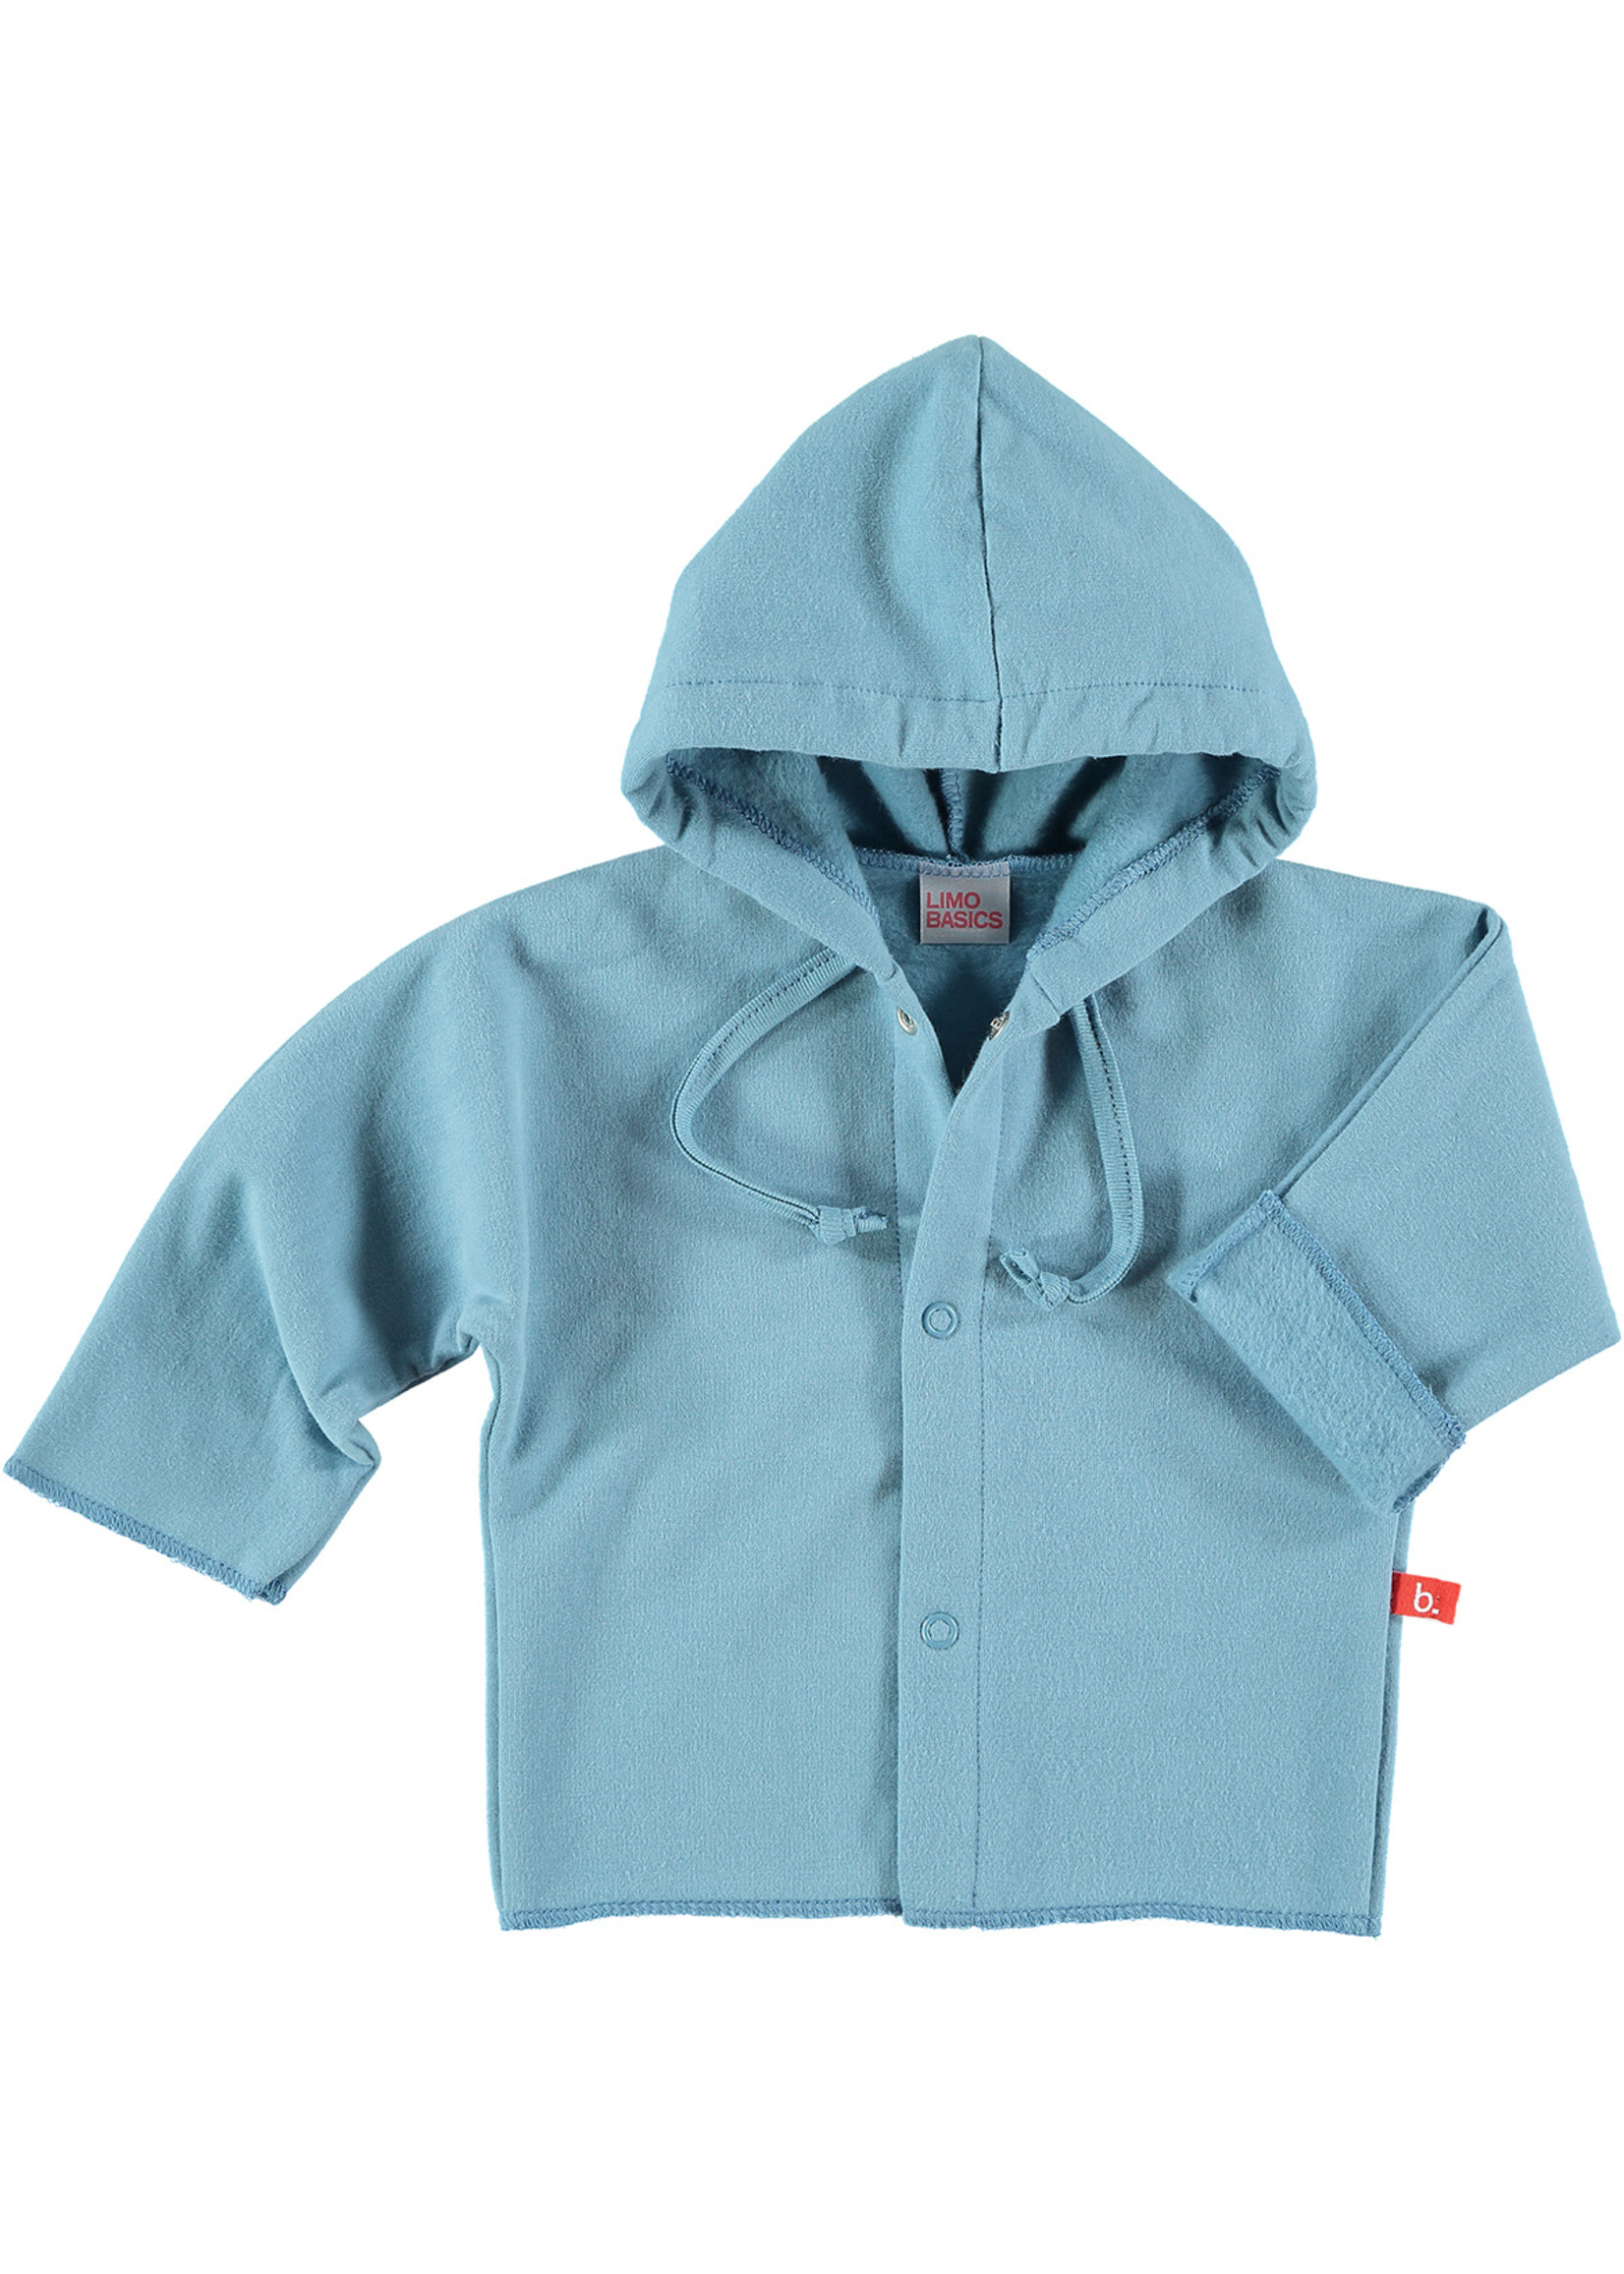 Limo basics Baby jacket cotton denim blue 50/56